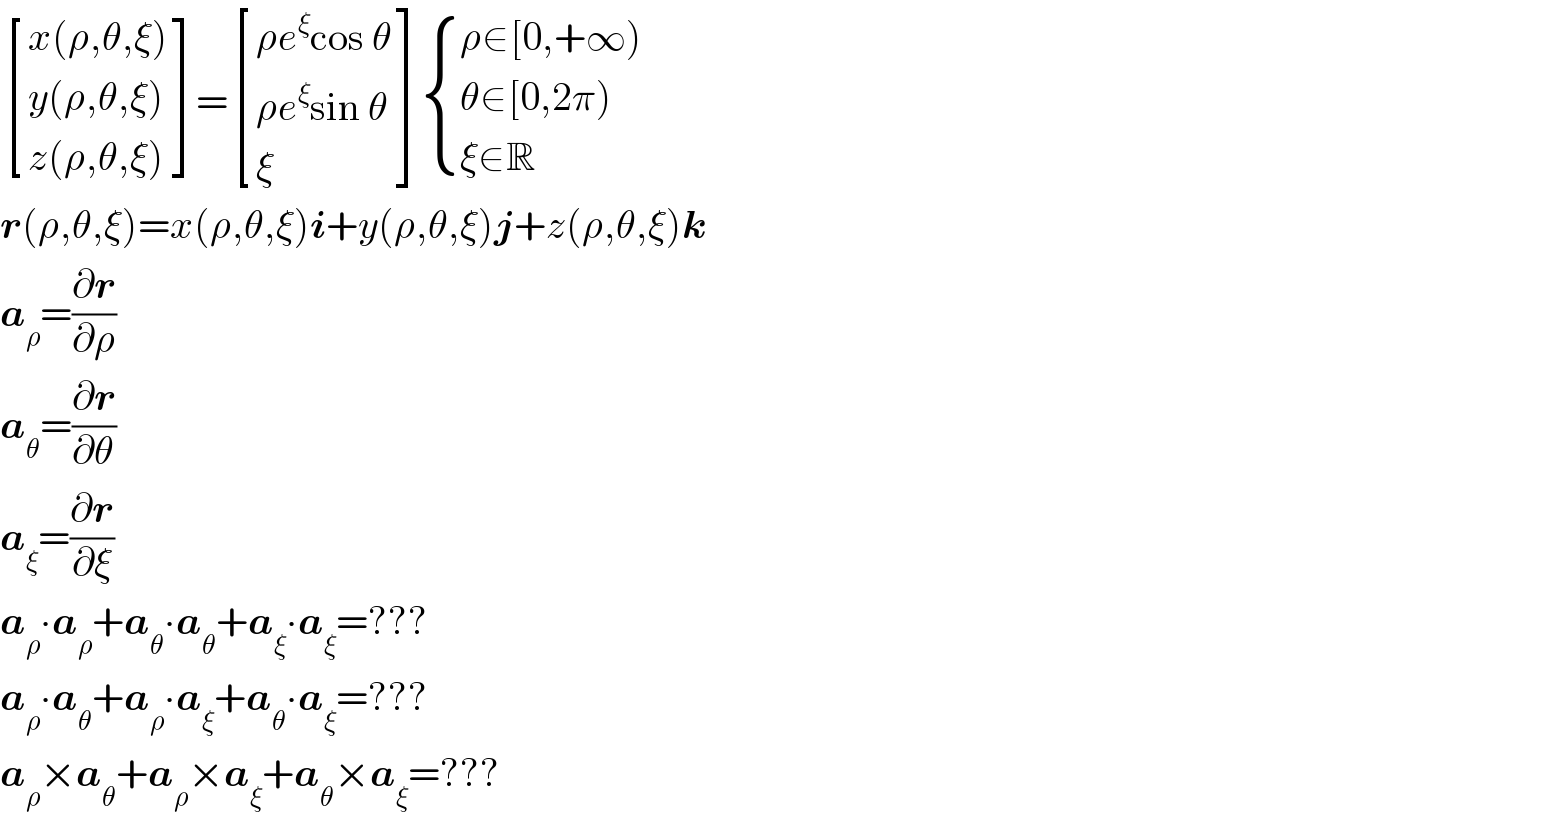  [((x(ρ,θ,ξ))),((y(ρ,θ,ξ))),((z(ρ,θ,ξ))) ]= [((ρe^ξ cos θ)),((ρe^ξ sin θ)),(ξ) ] { ((ρ∈[0,+∞))),((θ∈[0,2π))),((ξ∈R)) :}  r(ρ,θ,ξ)=x(ρ,θ,ξ)i+y(ρ,θ,ξ)j+z(ρ,θ,ξ)k  a_ρ =(∂r/∂ρ)  a_θ =(∂r/∂θ)  a_ξ =(∂r/∂ξ)  a_ρ ∙a_ρ +a_θ ∙a_θ +a_ξ ∙a_ξ =???  a_ρ ∙a_θ +a_ρ ∙a_ξ +a_θ ∙a_ξ =???  a_ρ ×a_θ +a_ρ ×a_ξ +a_θ ×a_ξ =???  